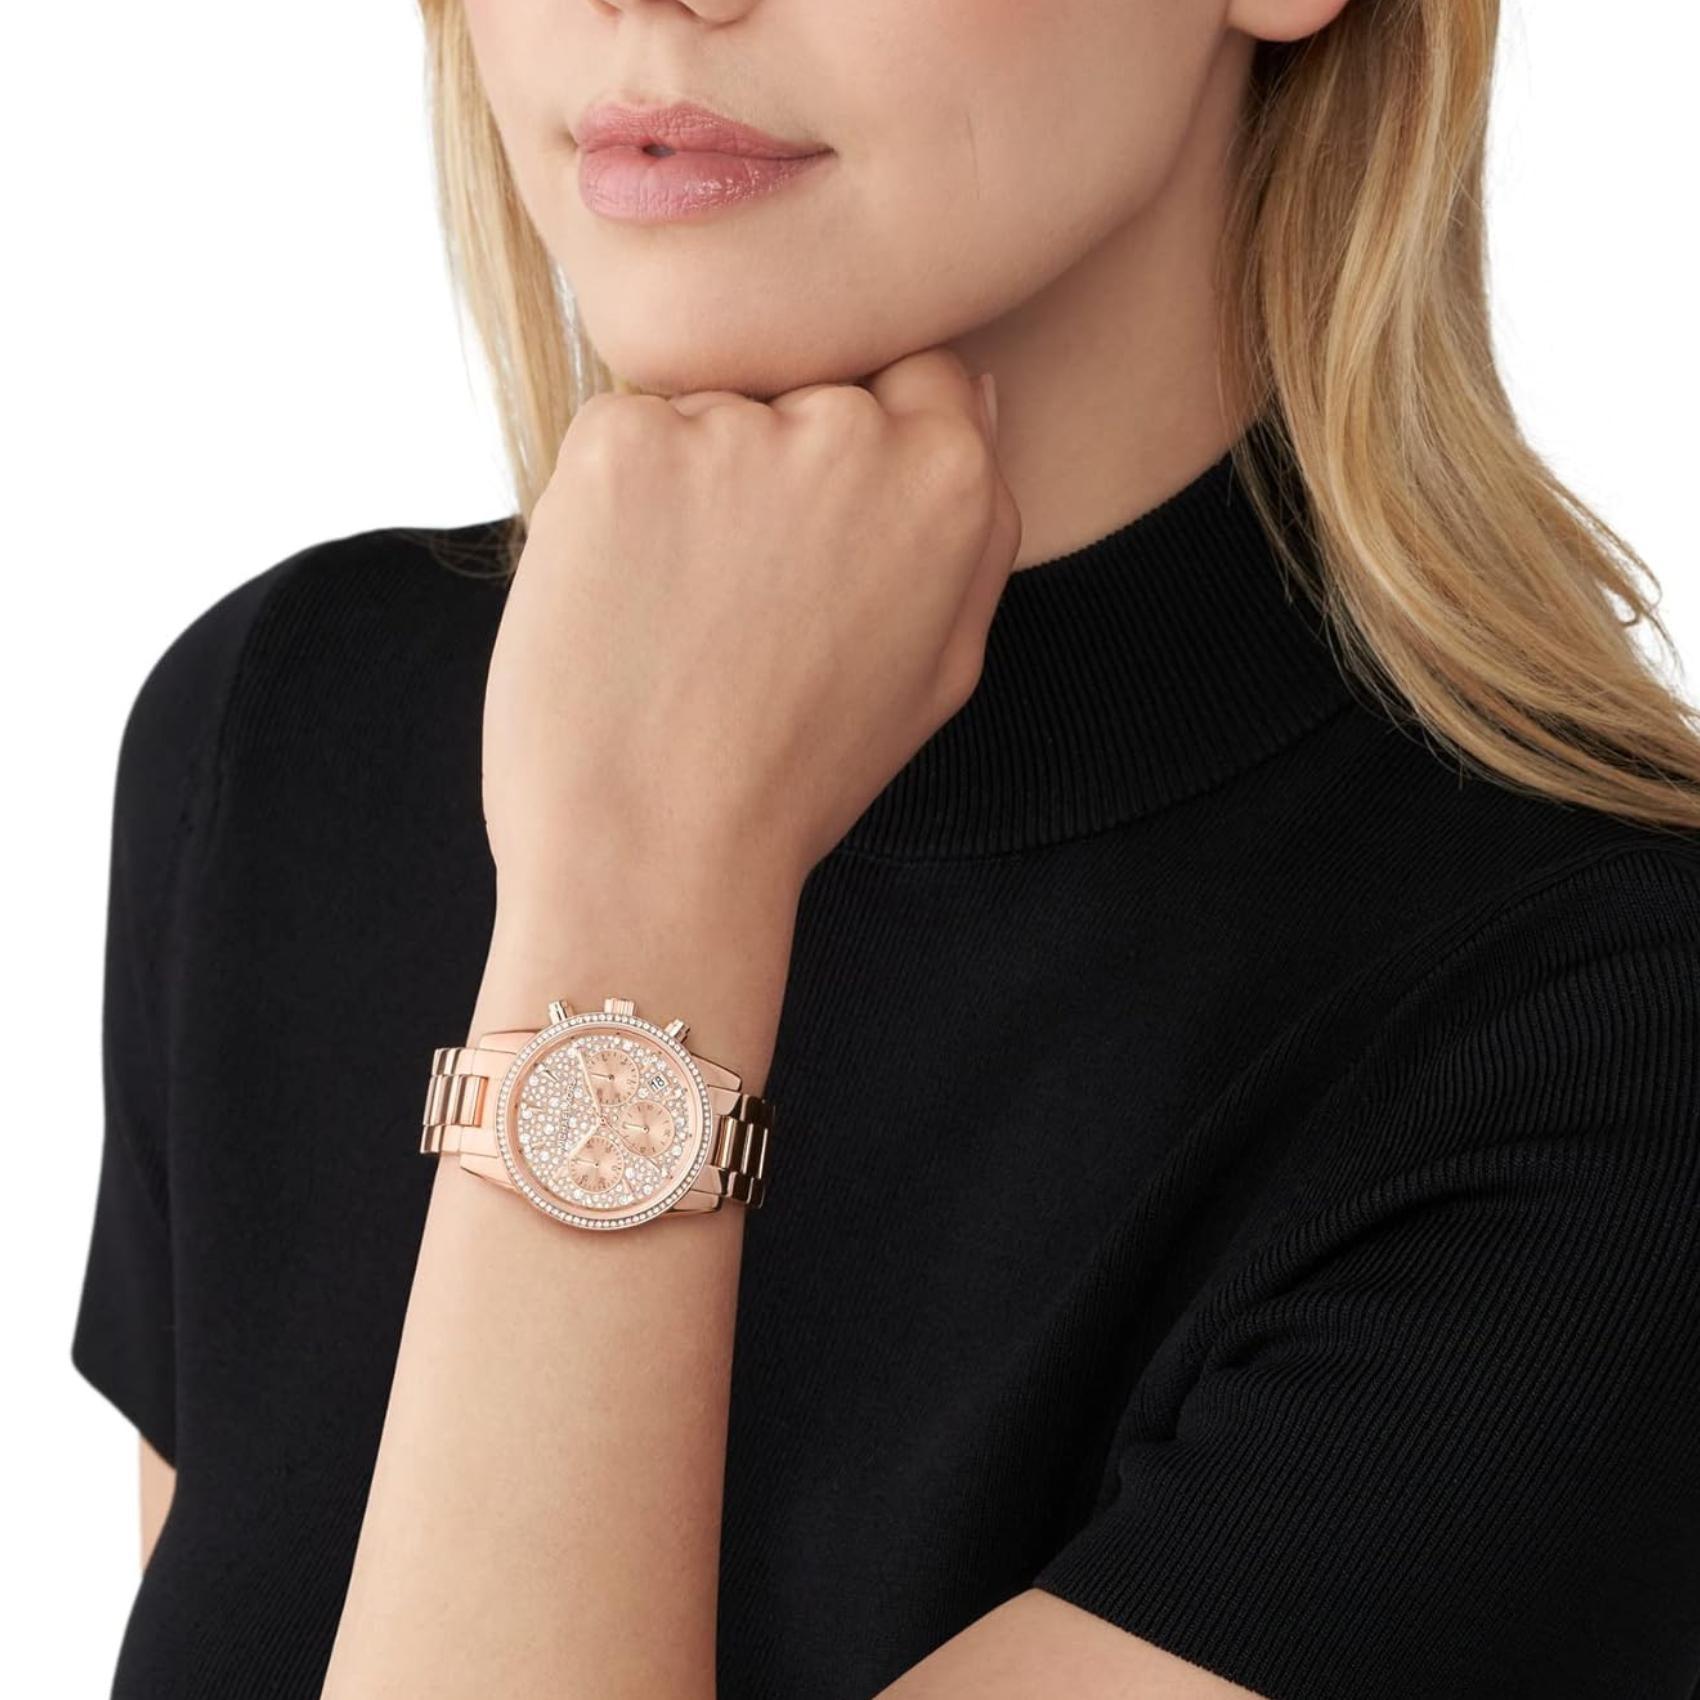 Γυναικείο ρολόι Michael Kors Ritz MK7302 χρονογράφος με ατσάλινο μπρασελέ σε ροζ χρυσό χρώμα ροζ χρυσό καντράν με ημερομηνία και στεφάνι 37mm με ζιργκόν.